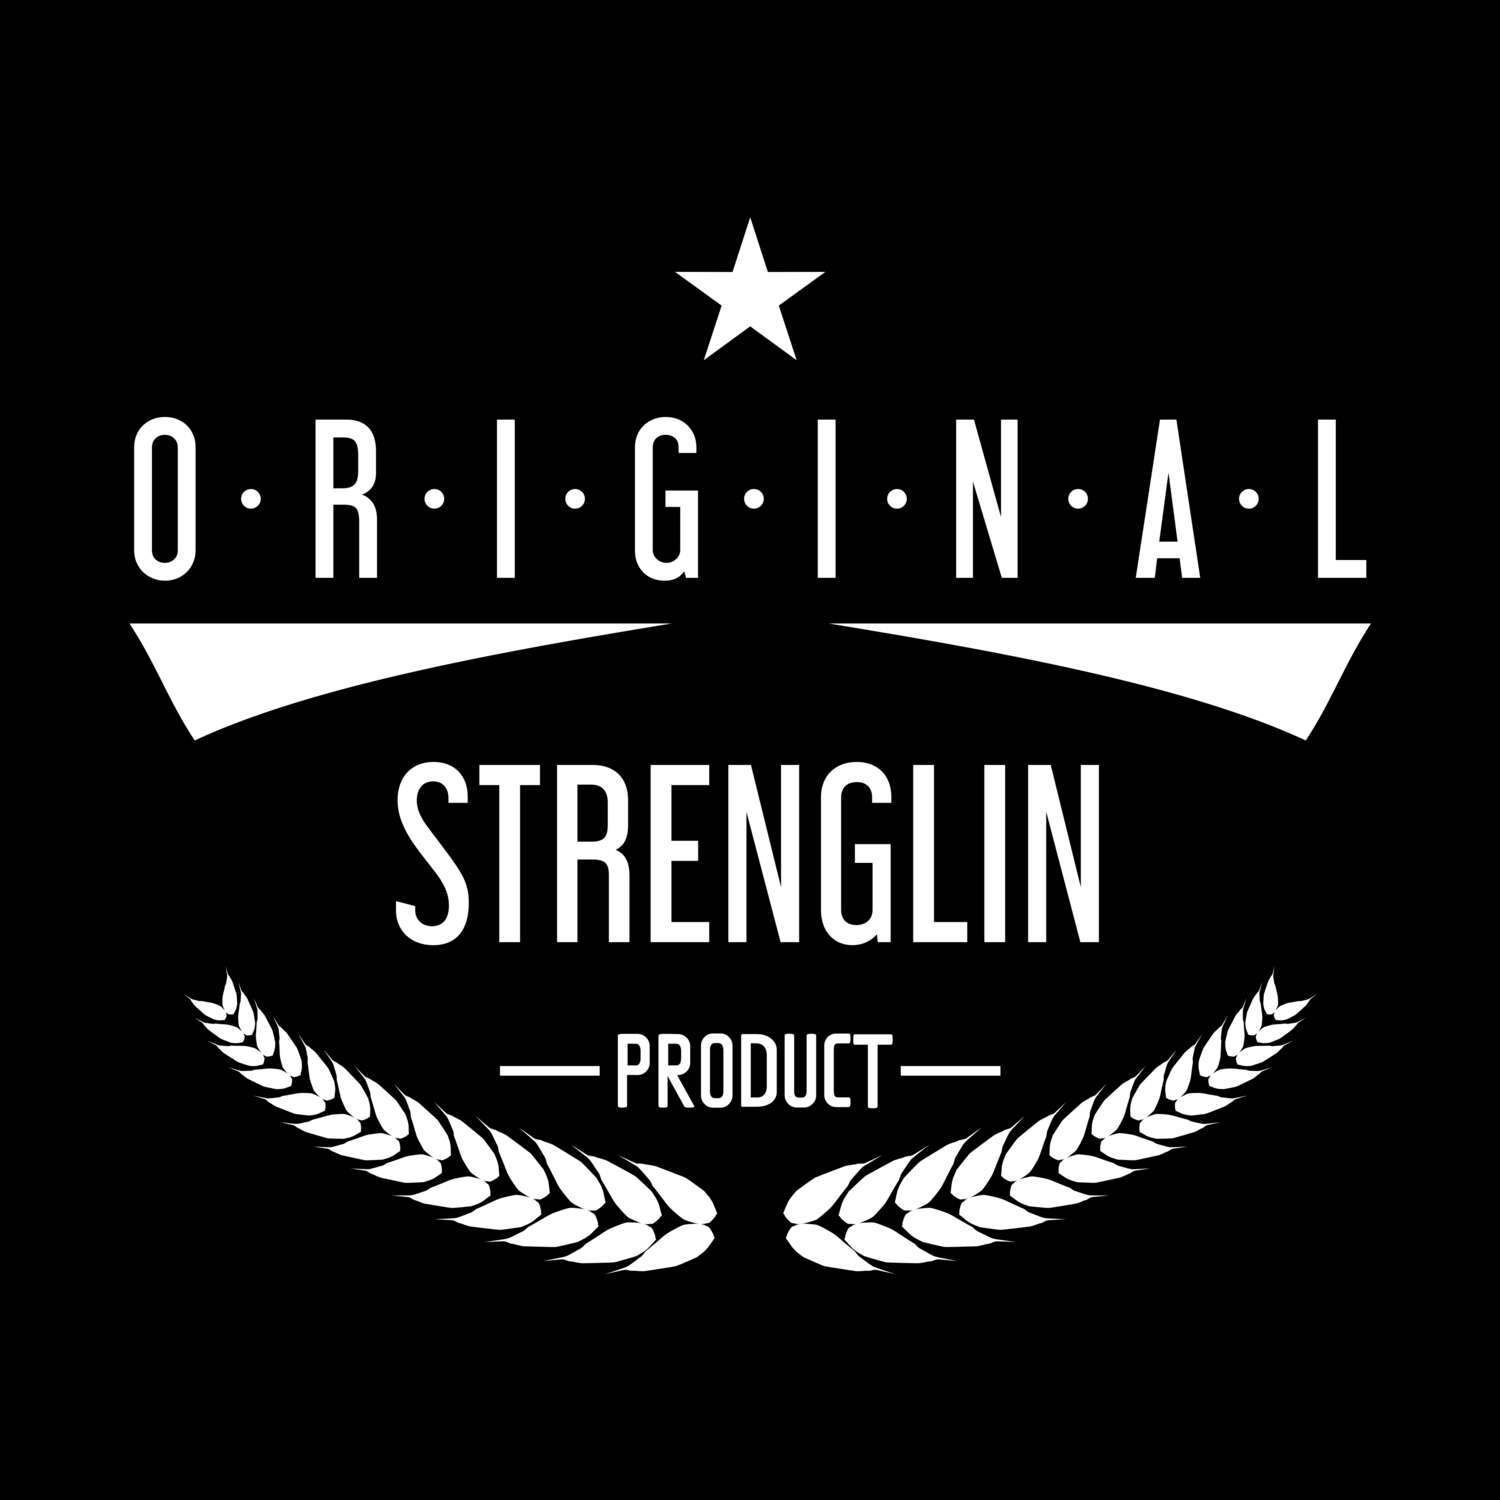 Strenglin T-Shirt »Original Product«